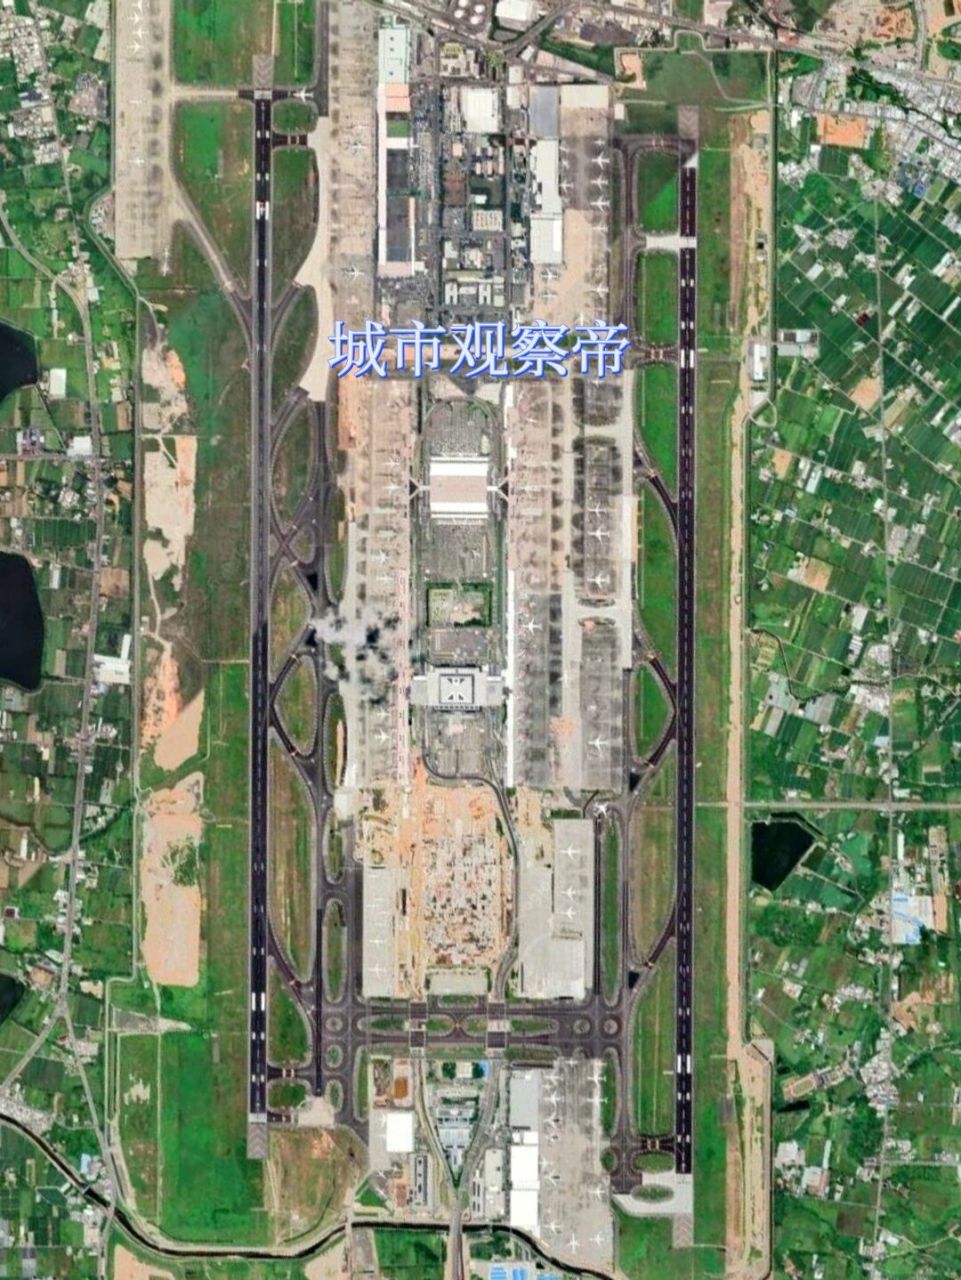 机场中国篇:台湾桃园国际机场 台湾桃园国际机场:台湾第一大机场 通航